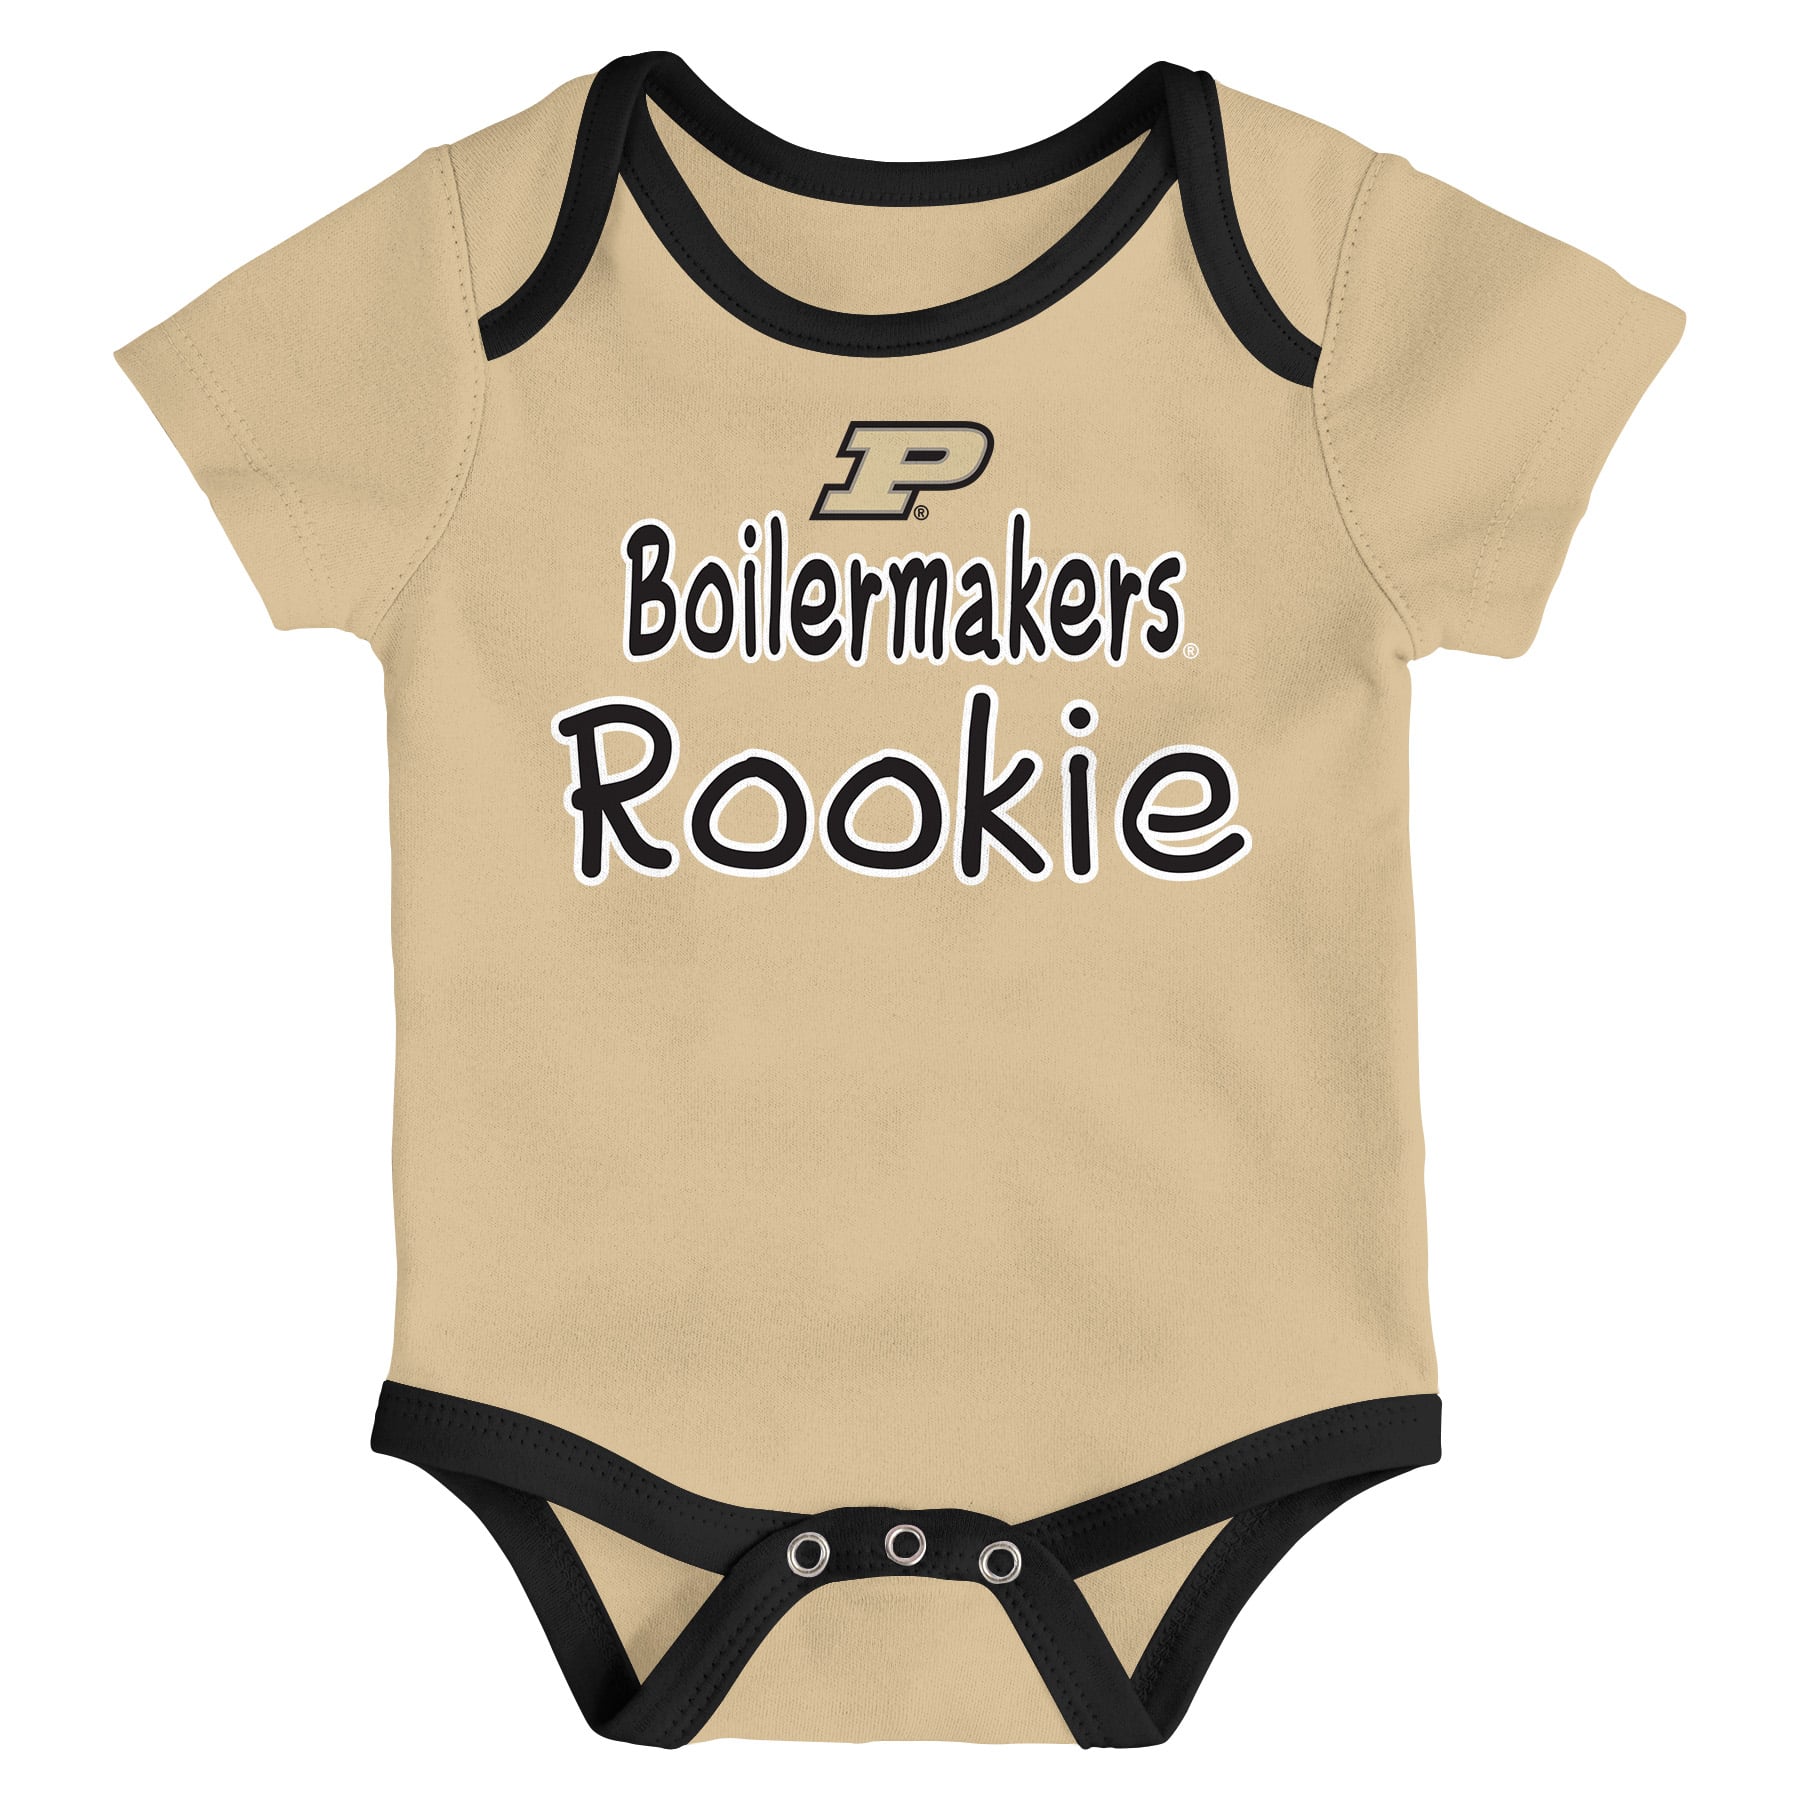 Purdue Boilermakers Baby 3 Pack Future Star Onesie Creeper Set ...